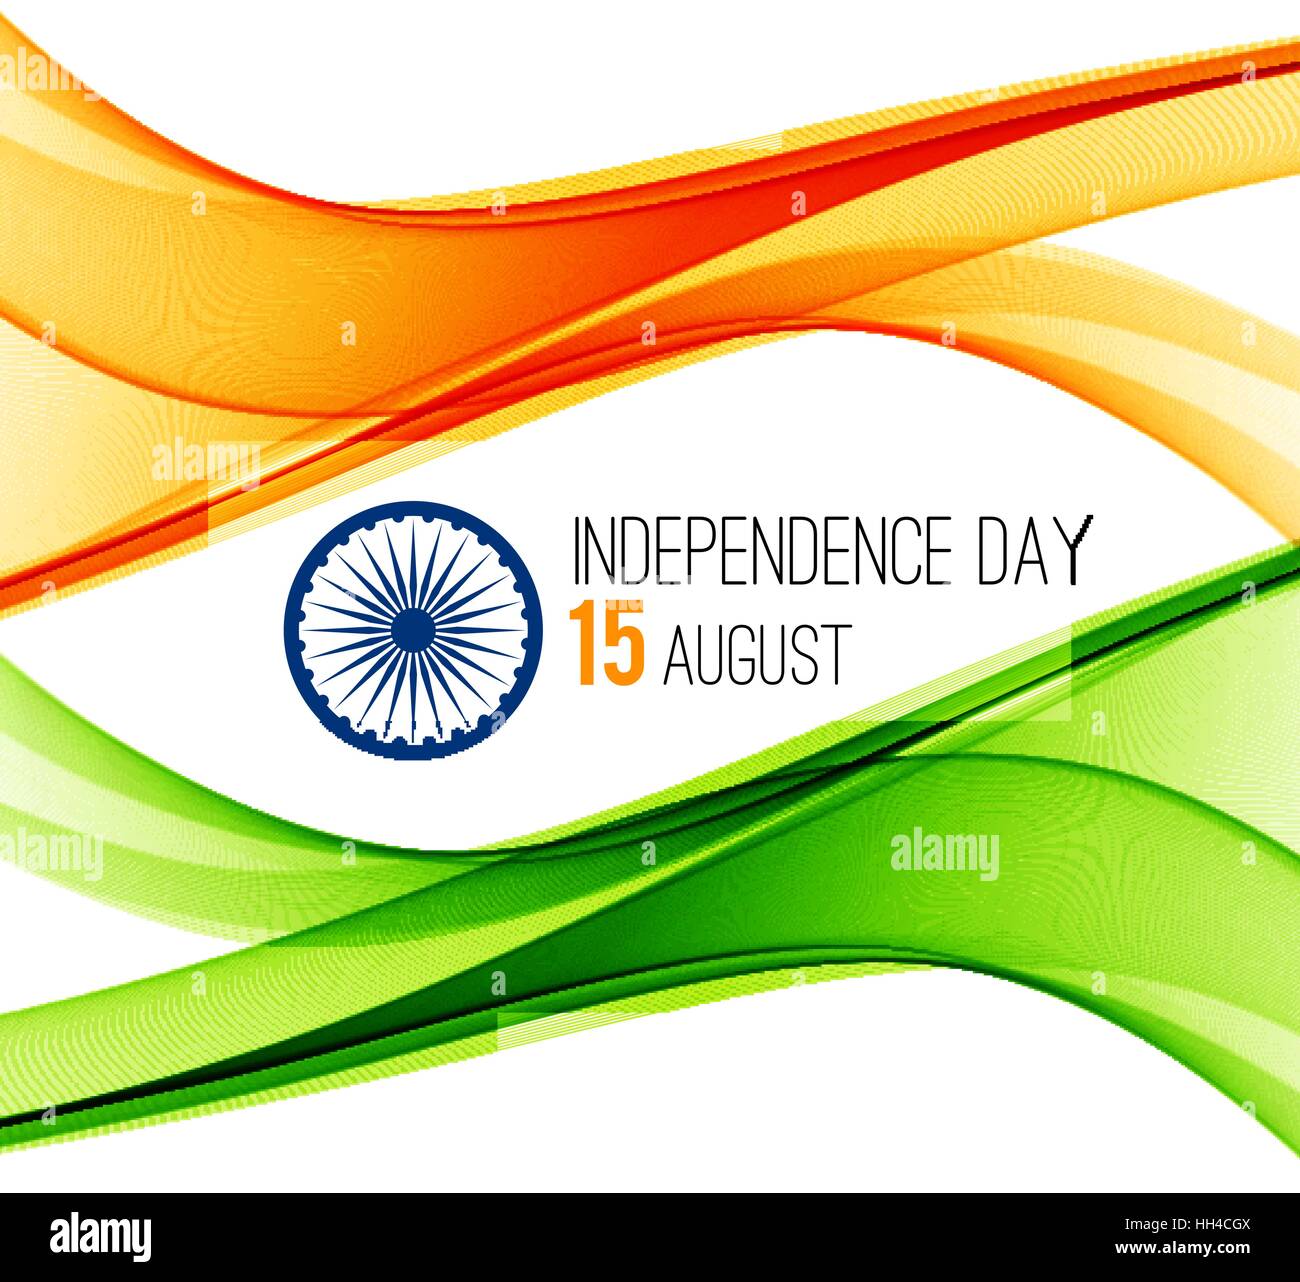 Ngày độc lập của Ấn Độ là một trong những ngày quan trọng nhất trong lịch sử của đất nước này. Hãy cùng xem hình ảnh liên quan đến ngày này để tôn vinh lòng yêu nước và tinh thần độc lập của dân tộc Ấn Độ. 